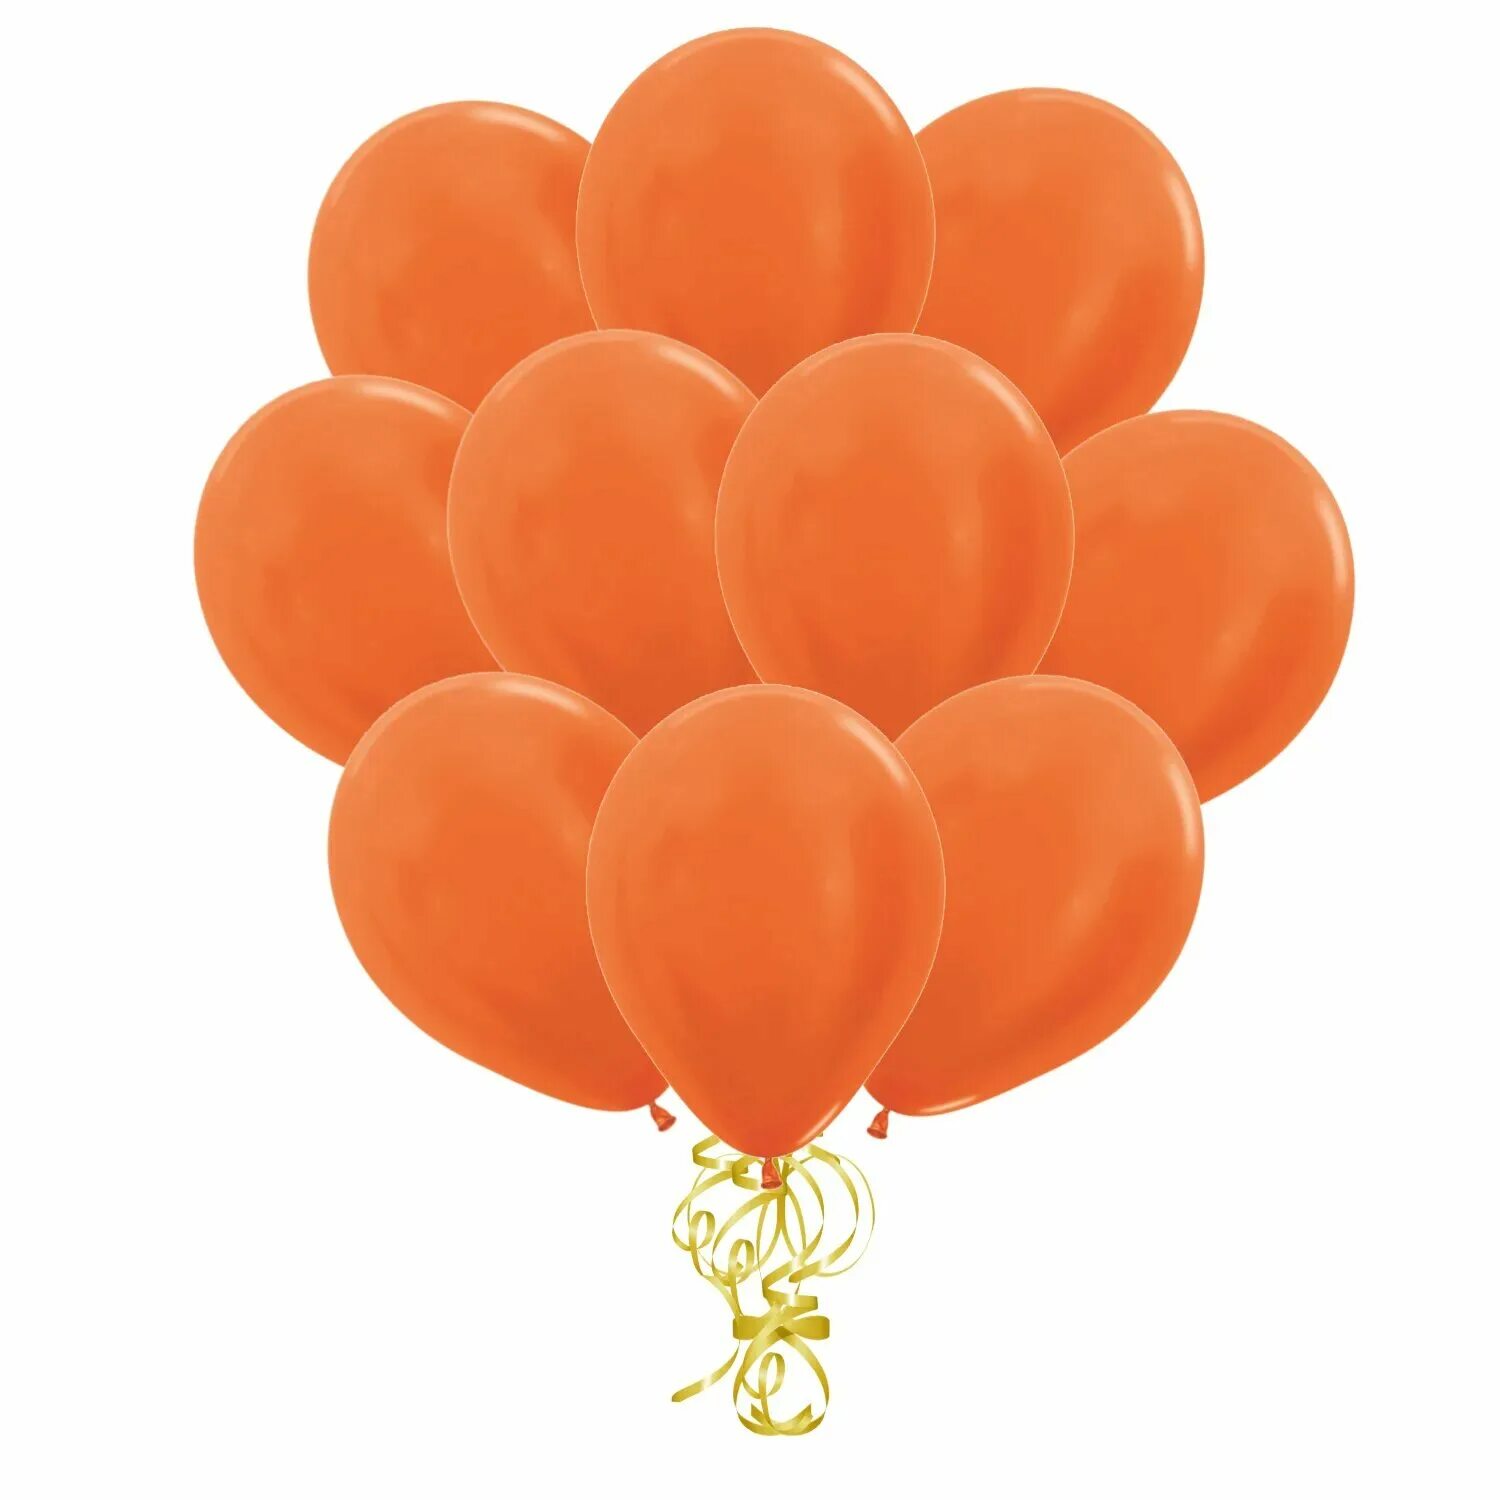 На оранжевом шаре. Оранжевые шары. Оранжевый воздушный шарик. Оранжевый шарик шарик. Оранжевые шары металлик.